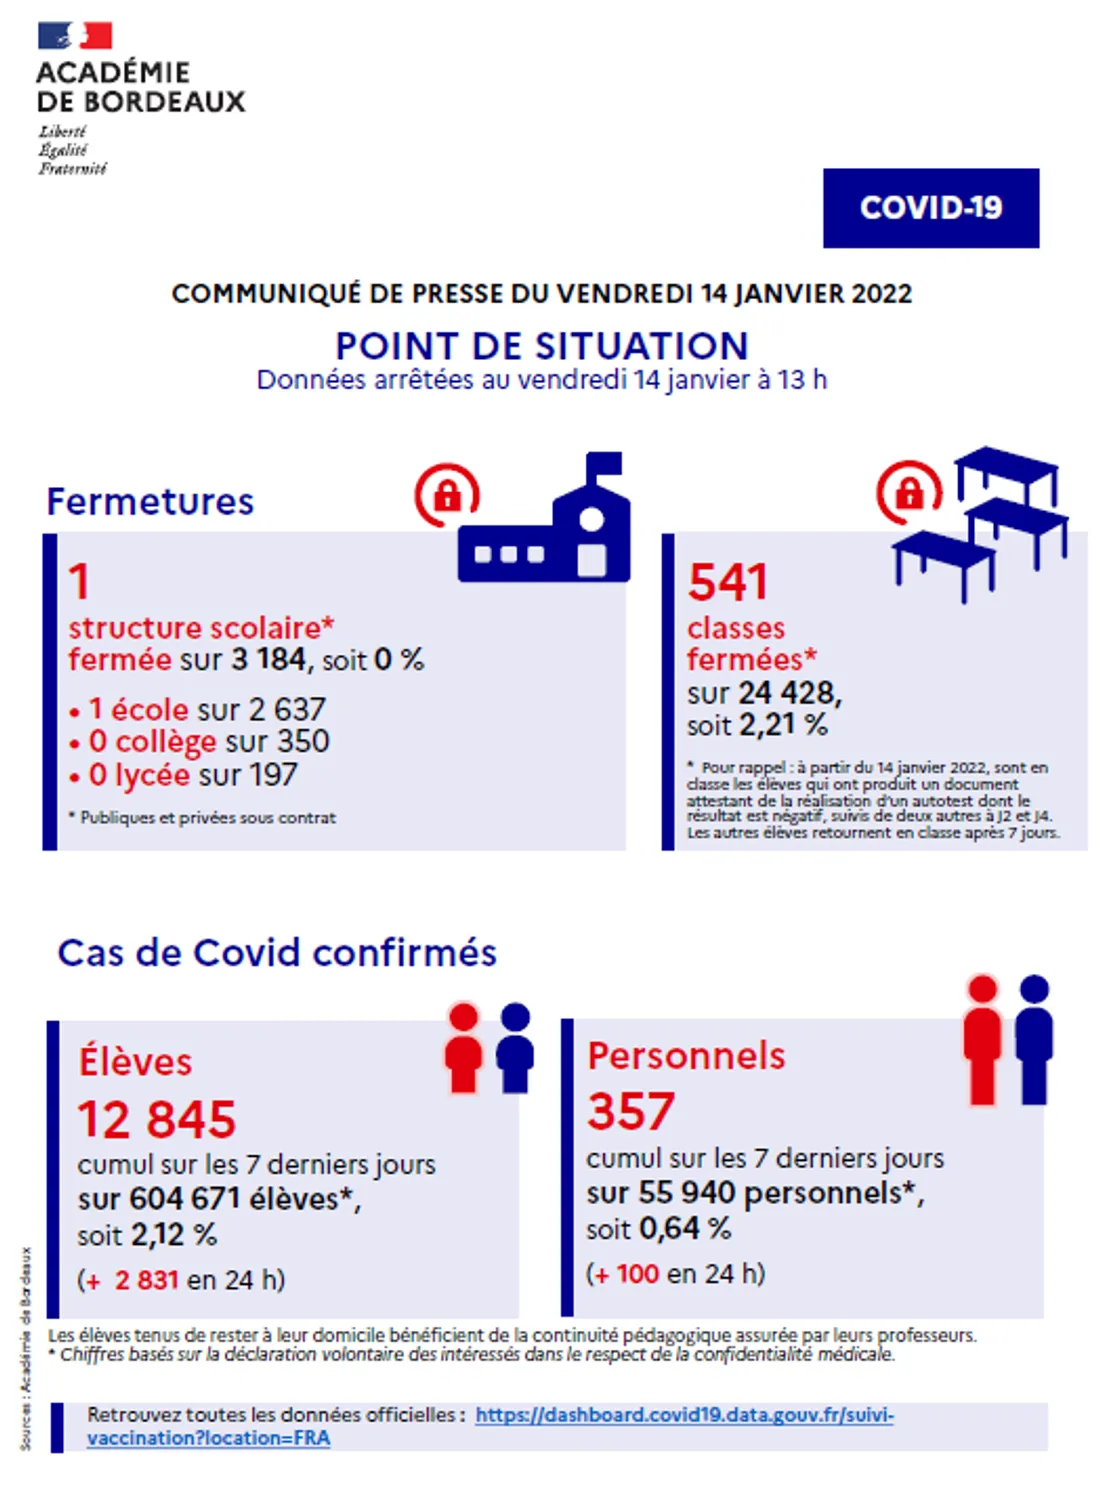 Point de situation Covid-19 dans l'académie de Bordeaux du 14/01/22